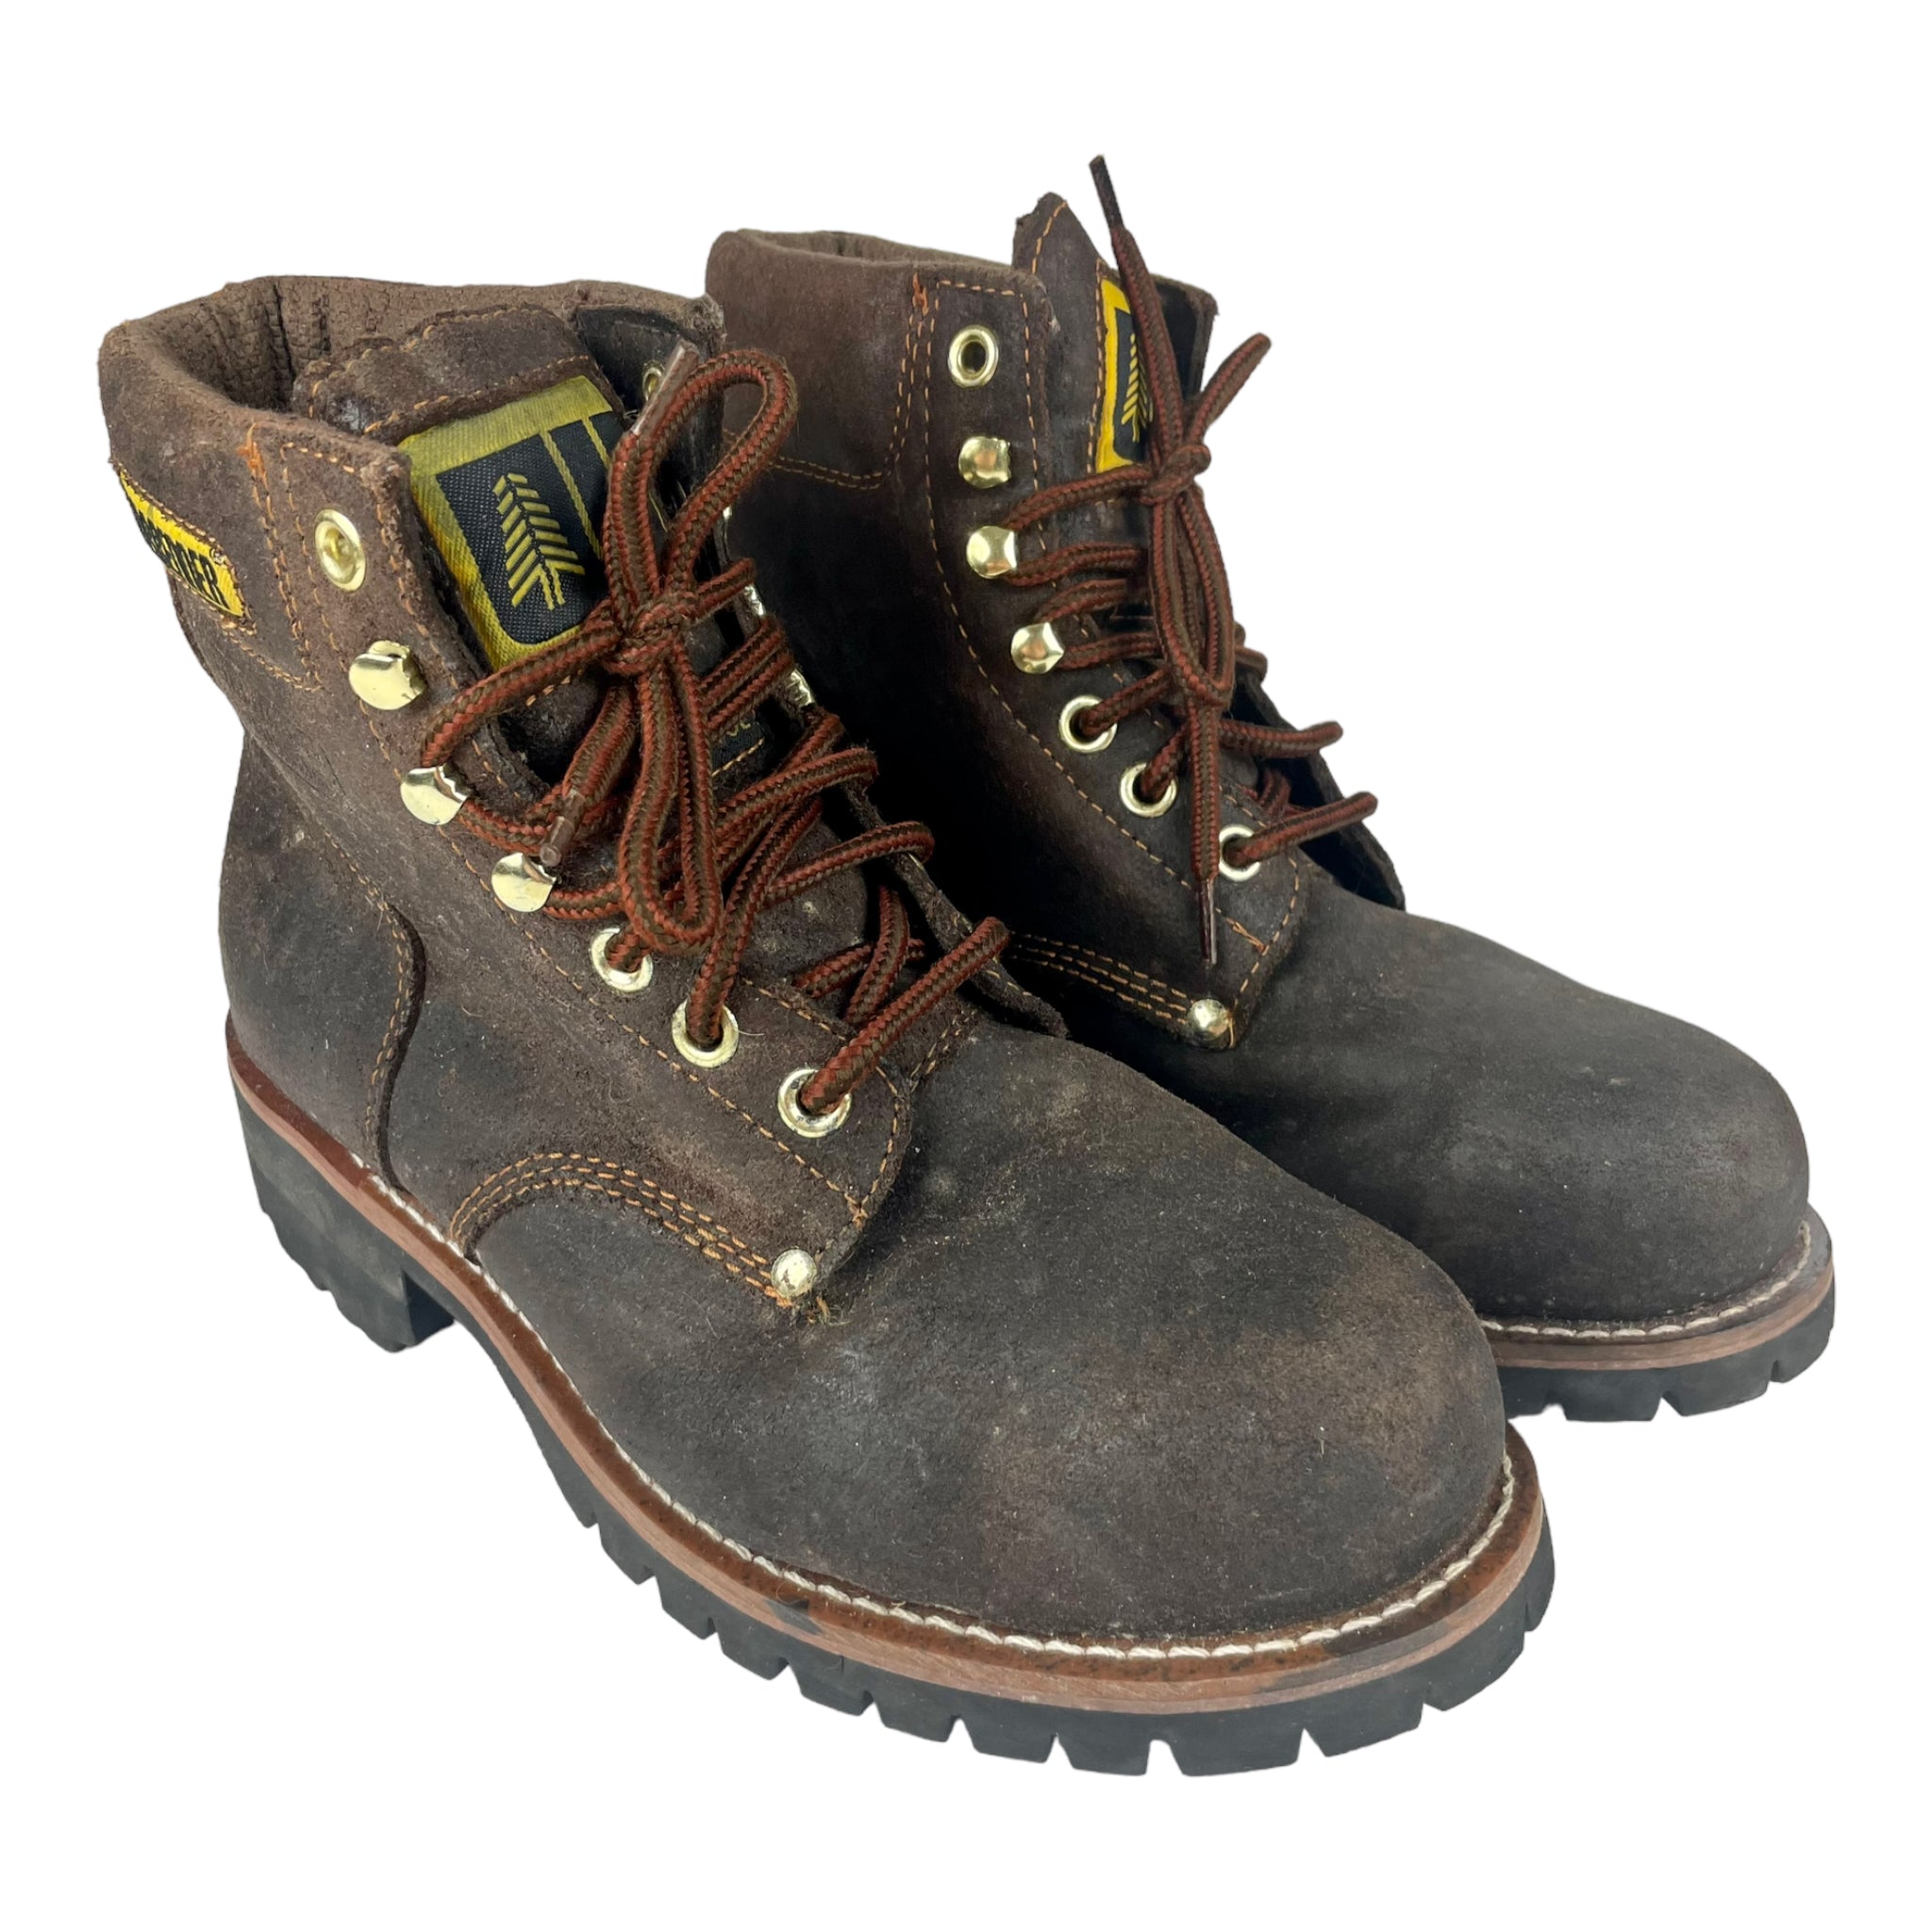 Vintage Steeltoe Lumberjack Boots